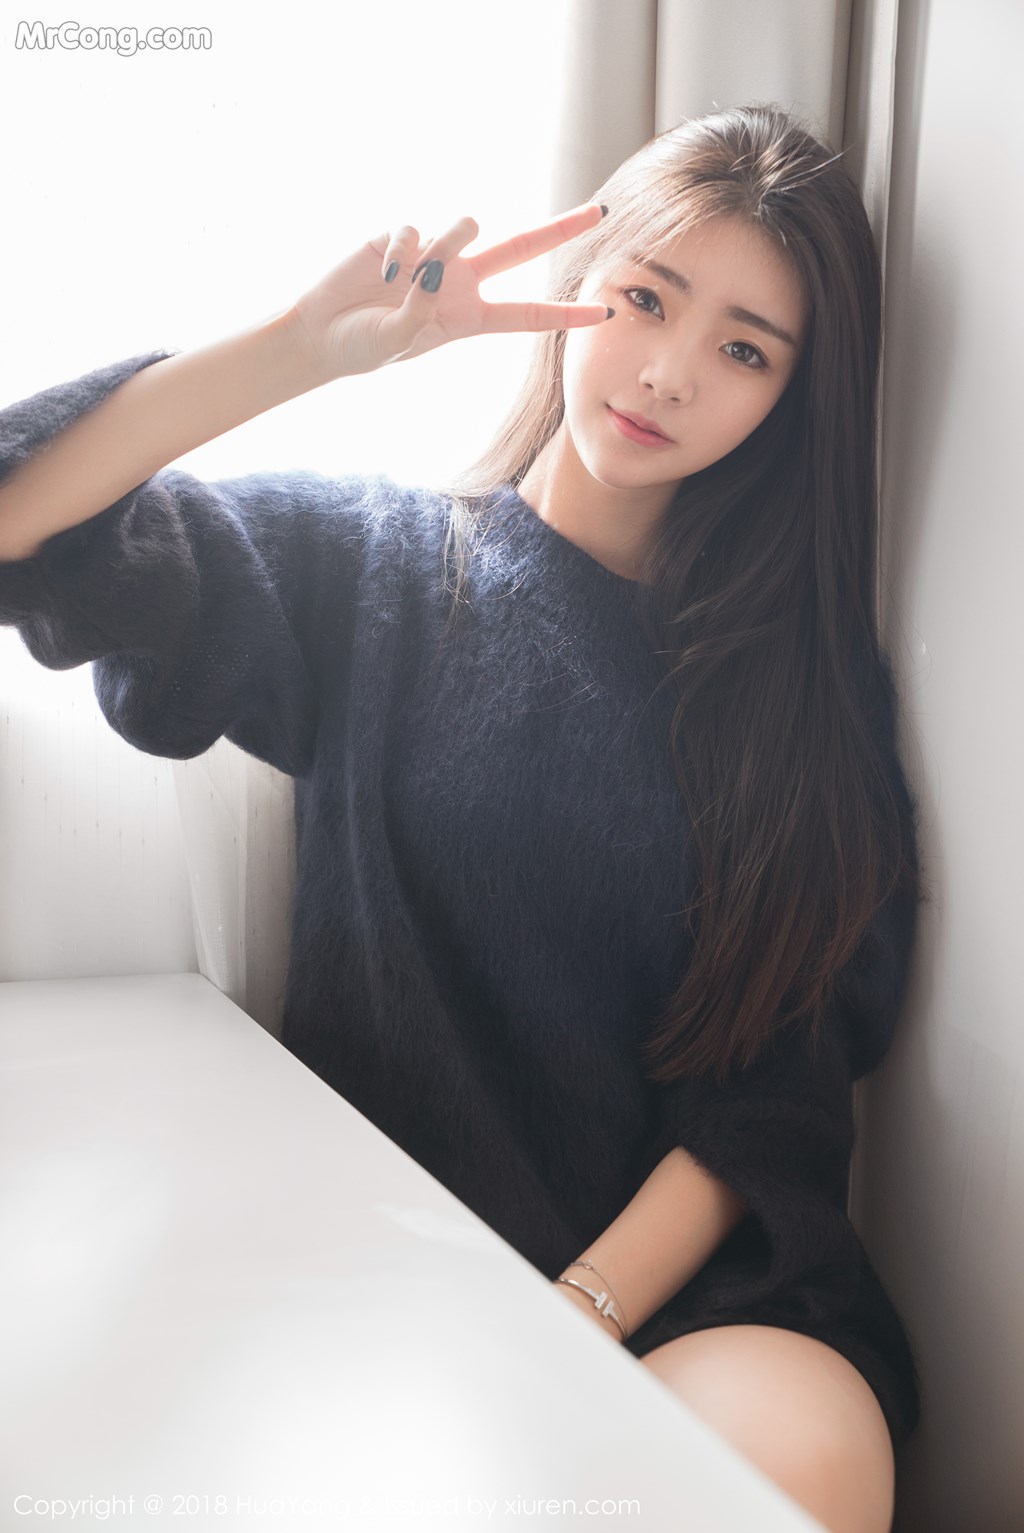 HuaYang 2018-01-23 Vol.027: Model Ke Le Vicky (可乐 Vicky) (31 photos) photo 1-3